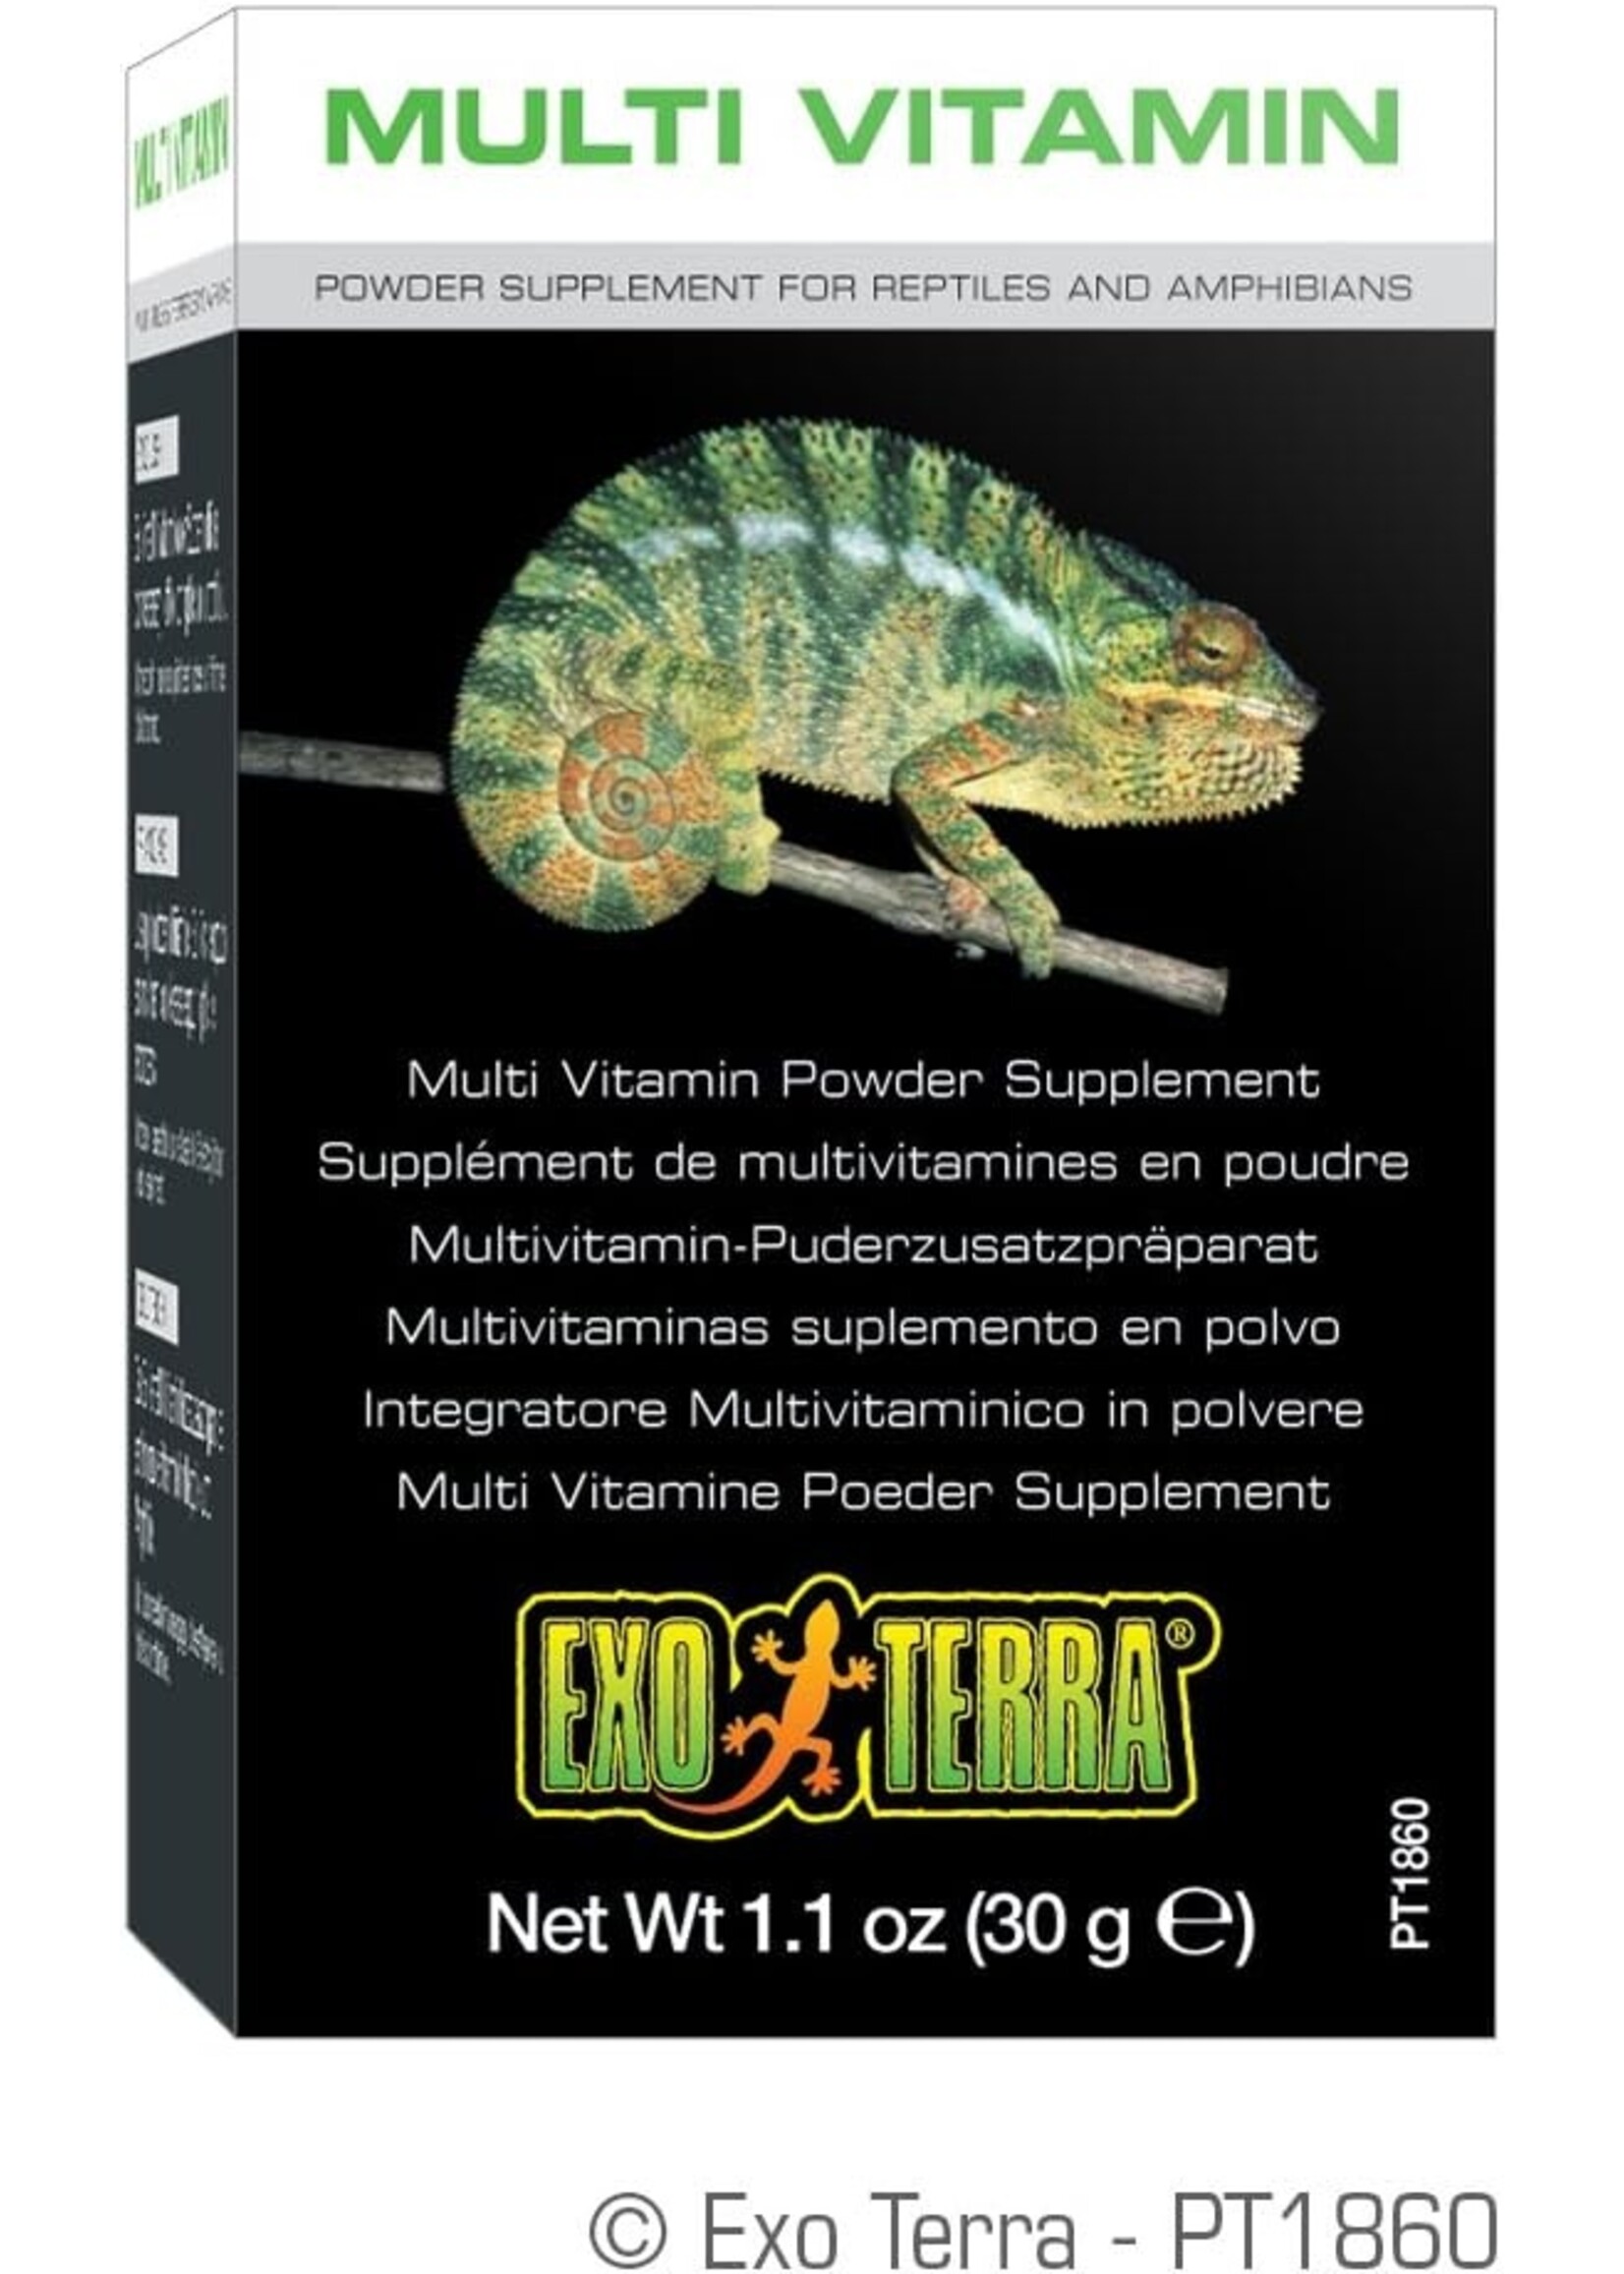 Exo Terra Exo Terra Multi Vitamin Powder Supplement